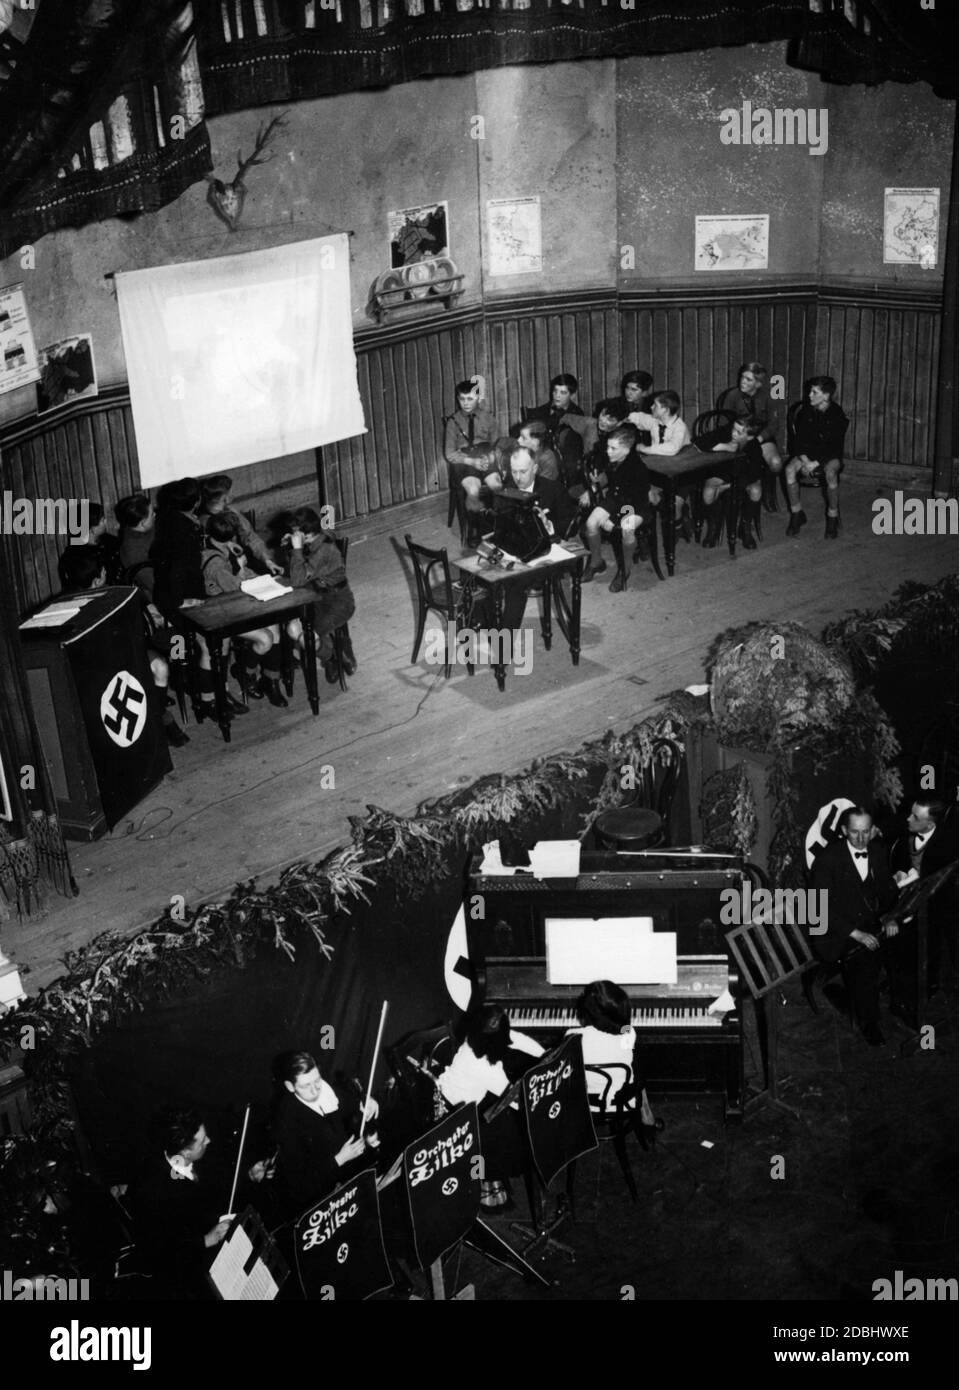 'Les élèves d'une école élémentaire de Berlin présentent sur scène leur jeu de propagande ''Jochen hilft im Luftschutz'', avec le chant de l'Horst-Wessel-Lied accompagné de l'orchestre d'école Zilko. A gauche, il y a un podium des enseignants avec un drapeau swastika." Banque D'Images